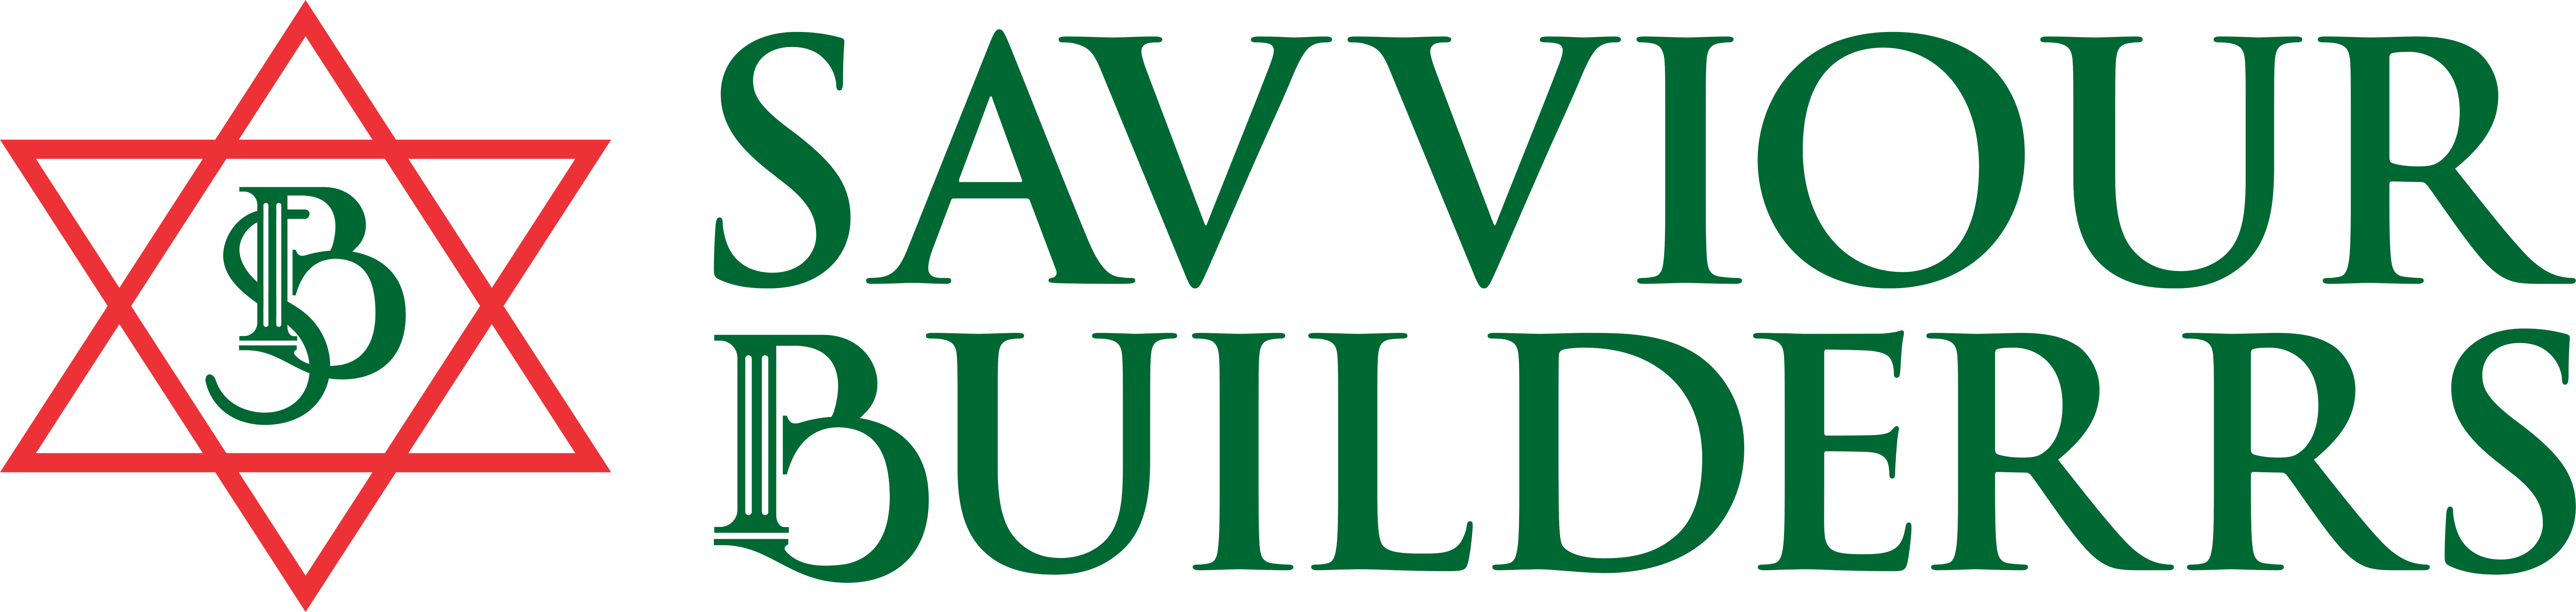 Savviour Builders